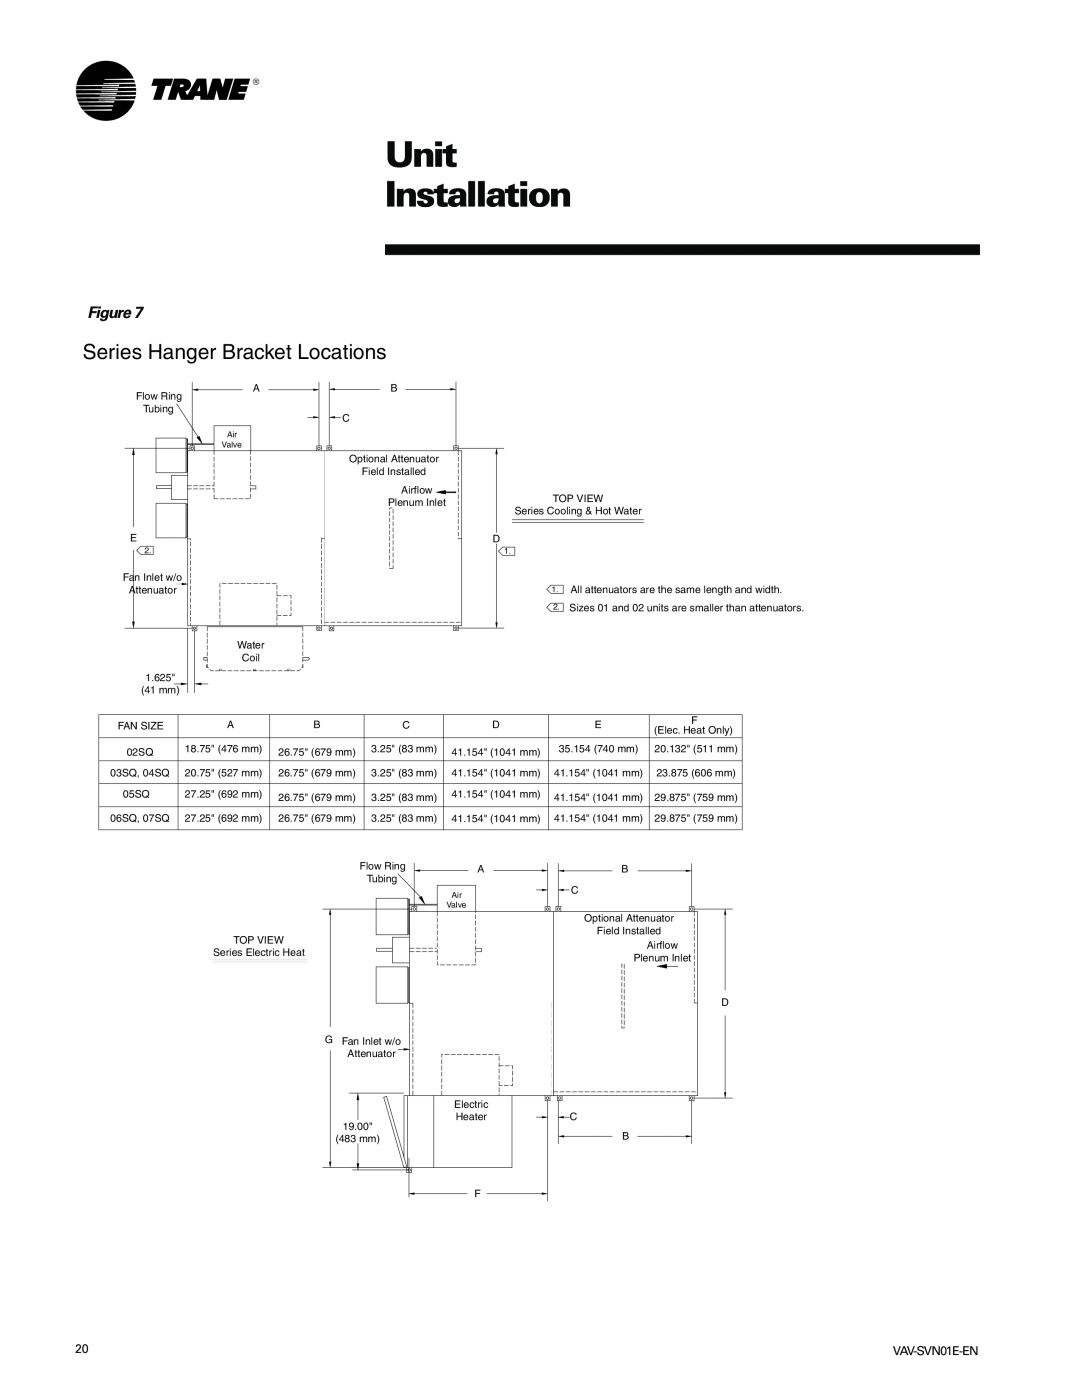 Trane VAV-SVN01E-EN, Trane manual Series Hanger Bracket Locations, Unit Installation 